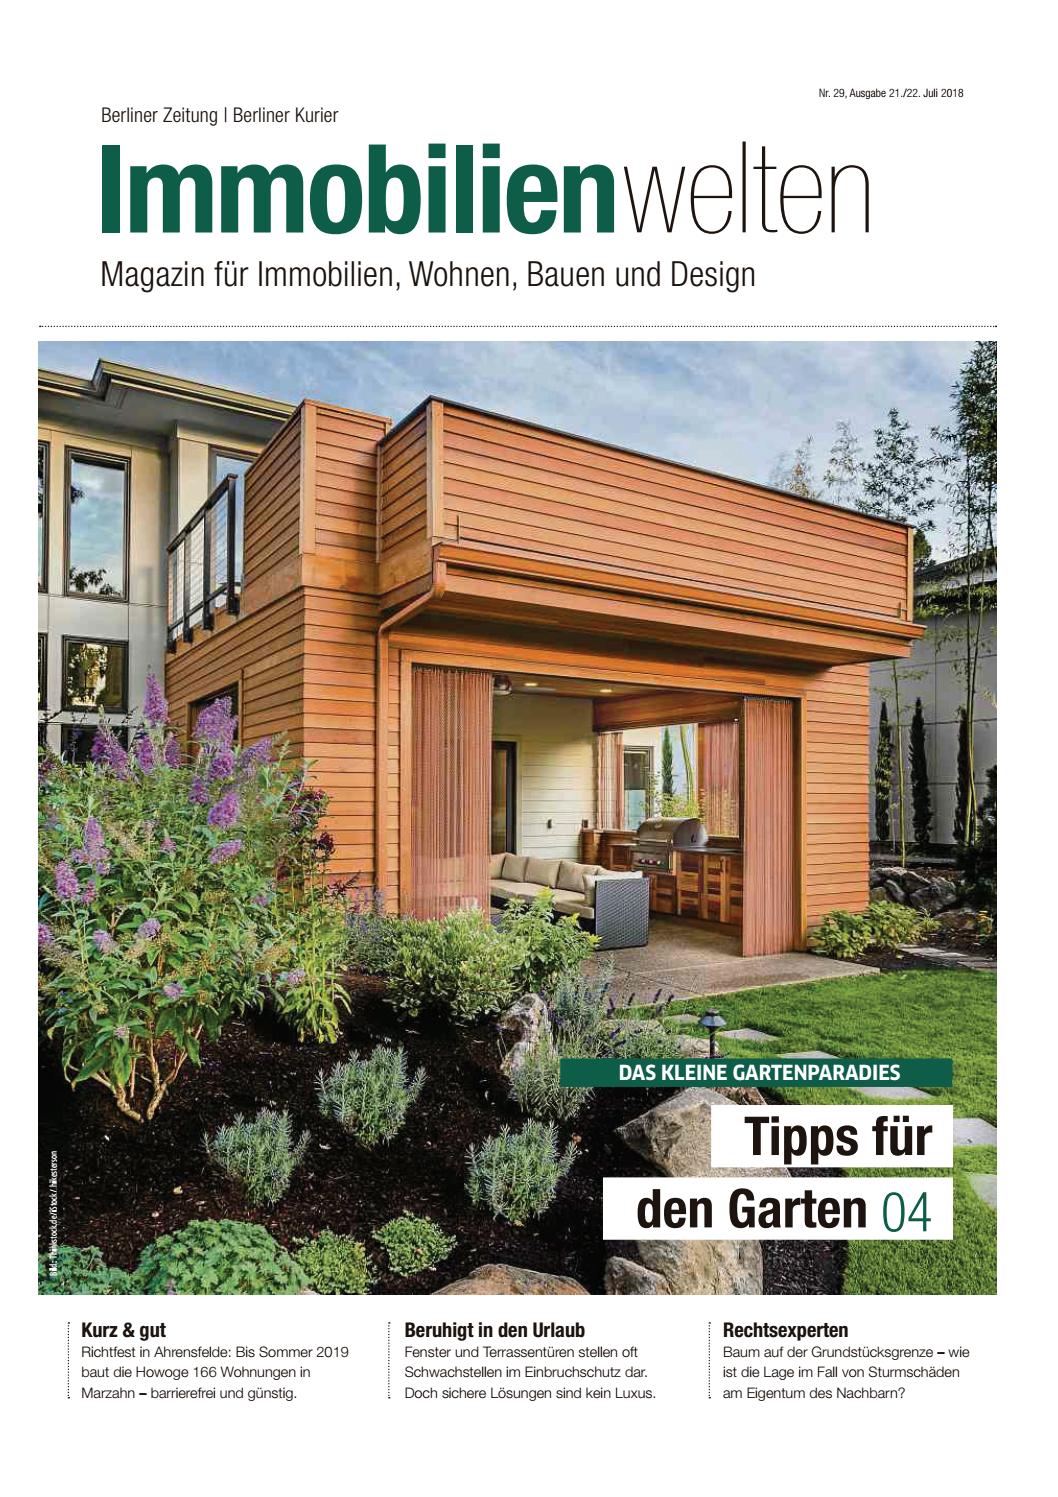 Garten Magazin Schön Immobilienwelten Tipps Für Den Garten by Berlin Me N